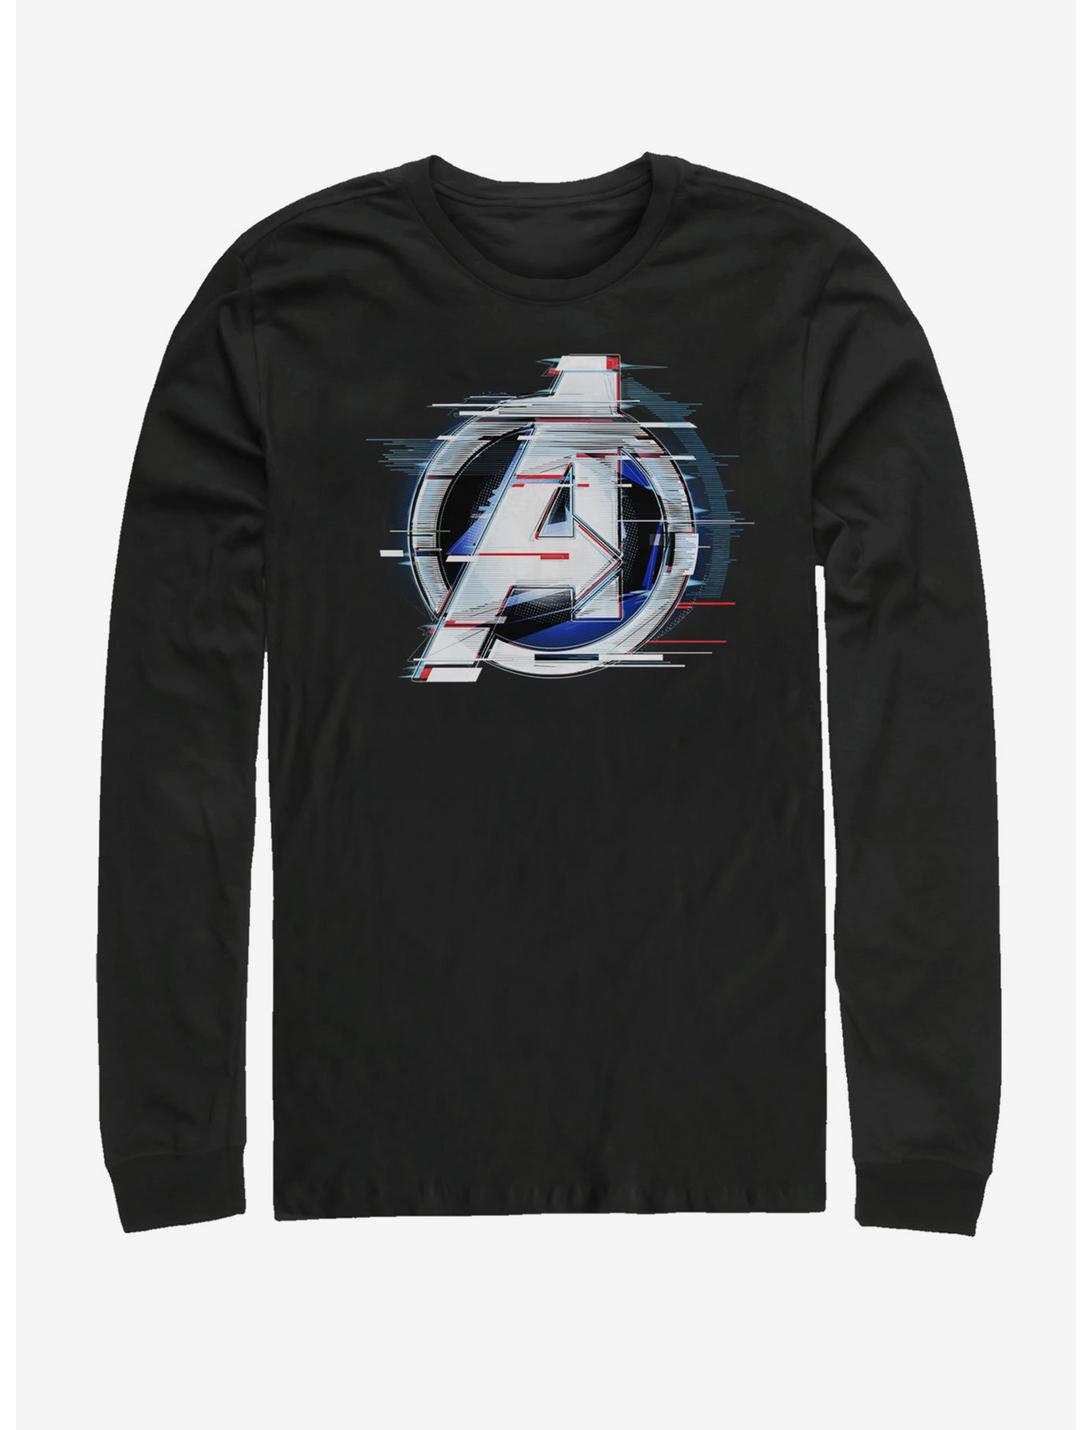 Marvel Avengers Endgame White Flares Long-Sleeve T-Shirt, BLACK, hi-res